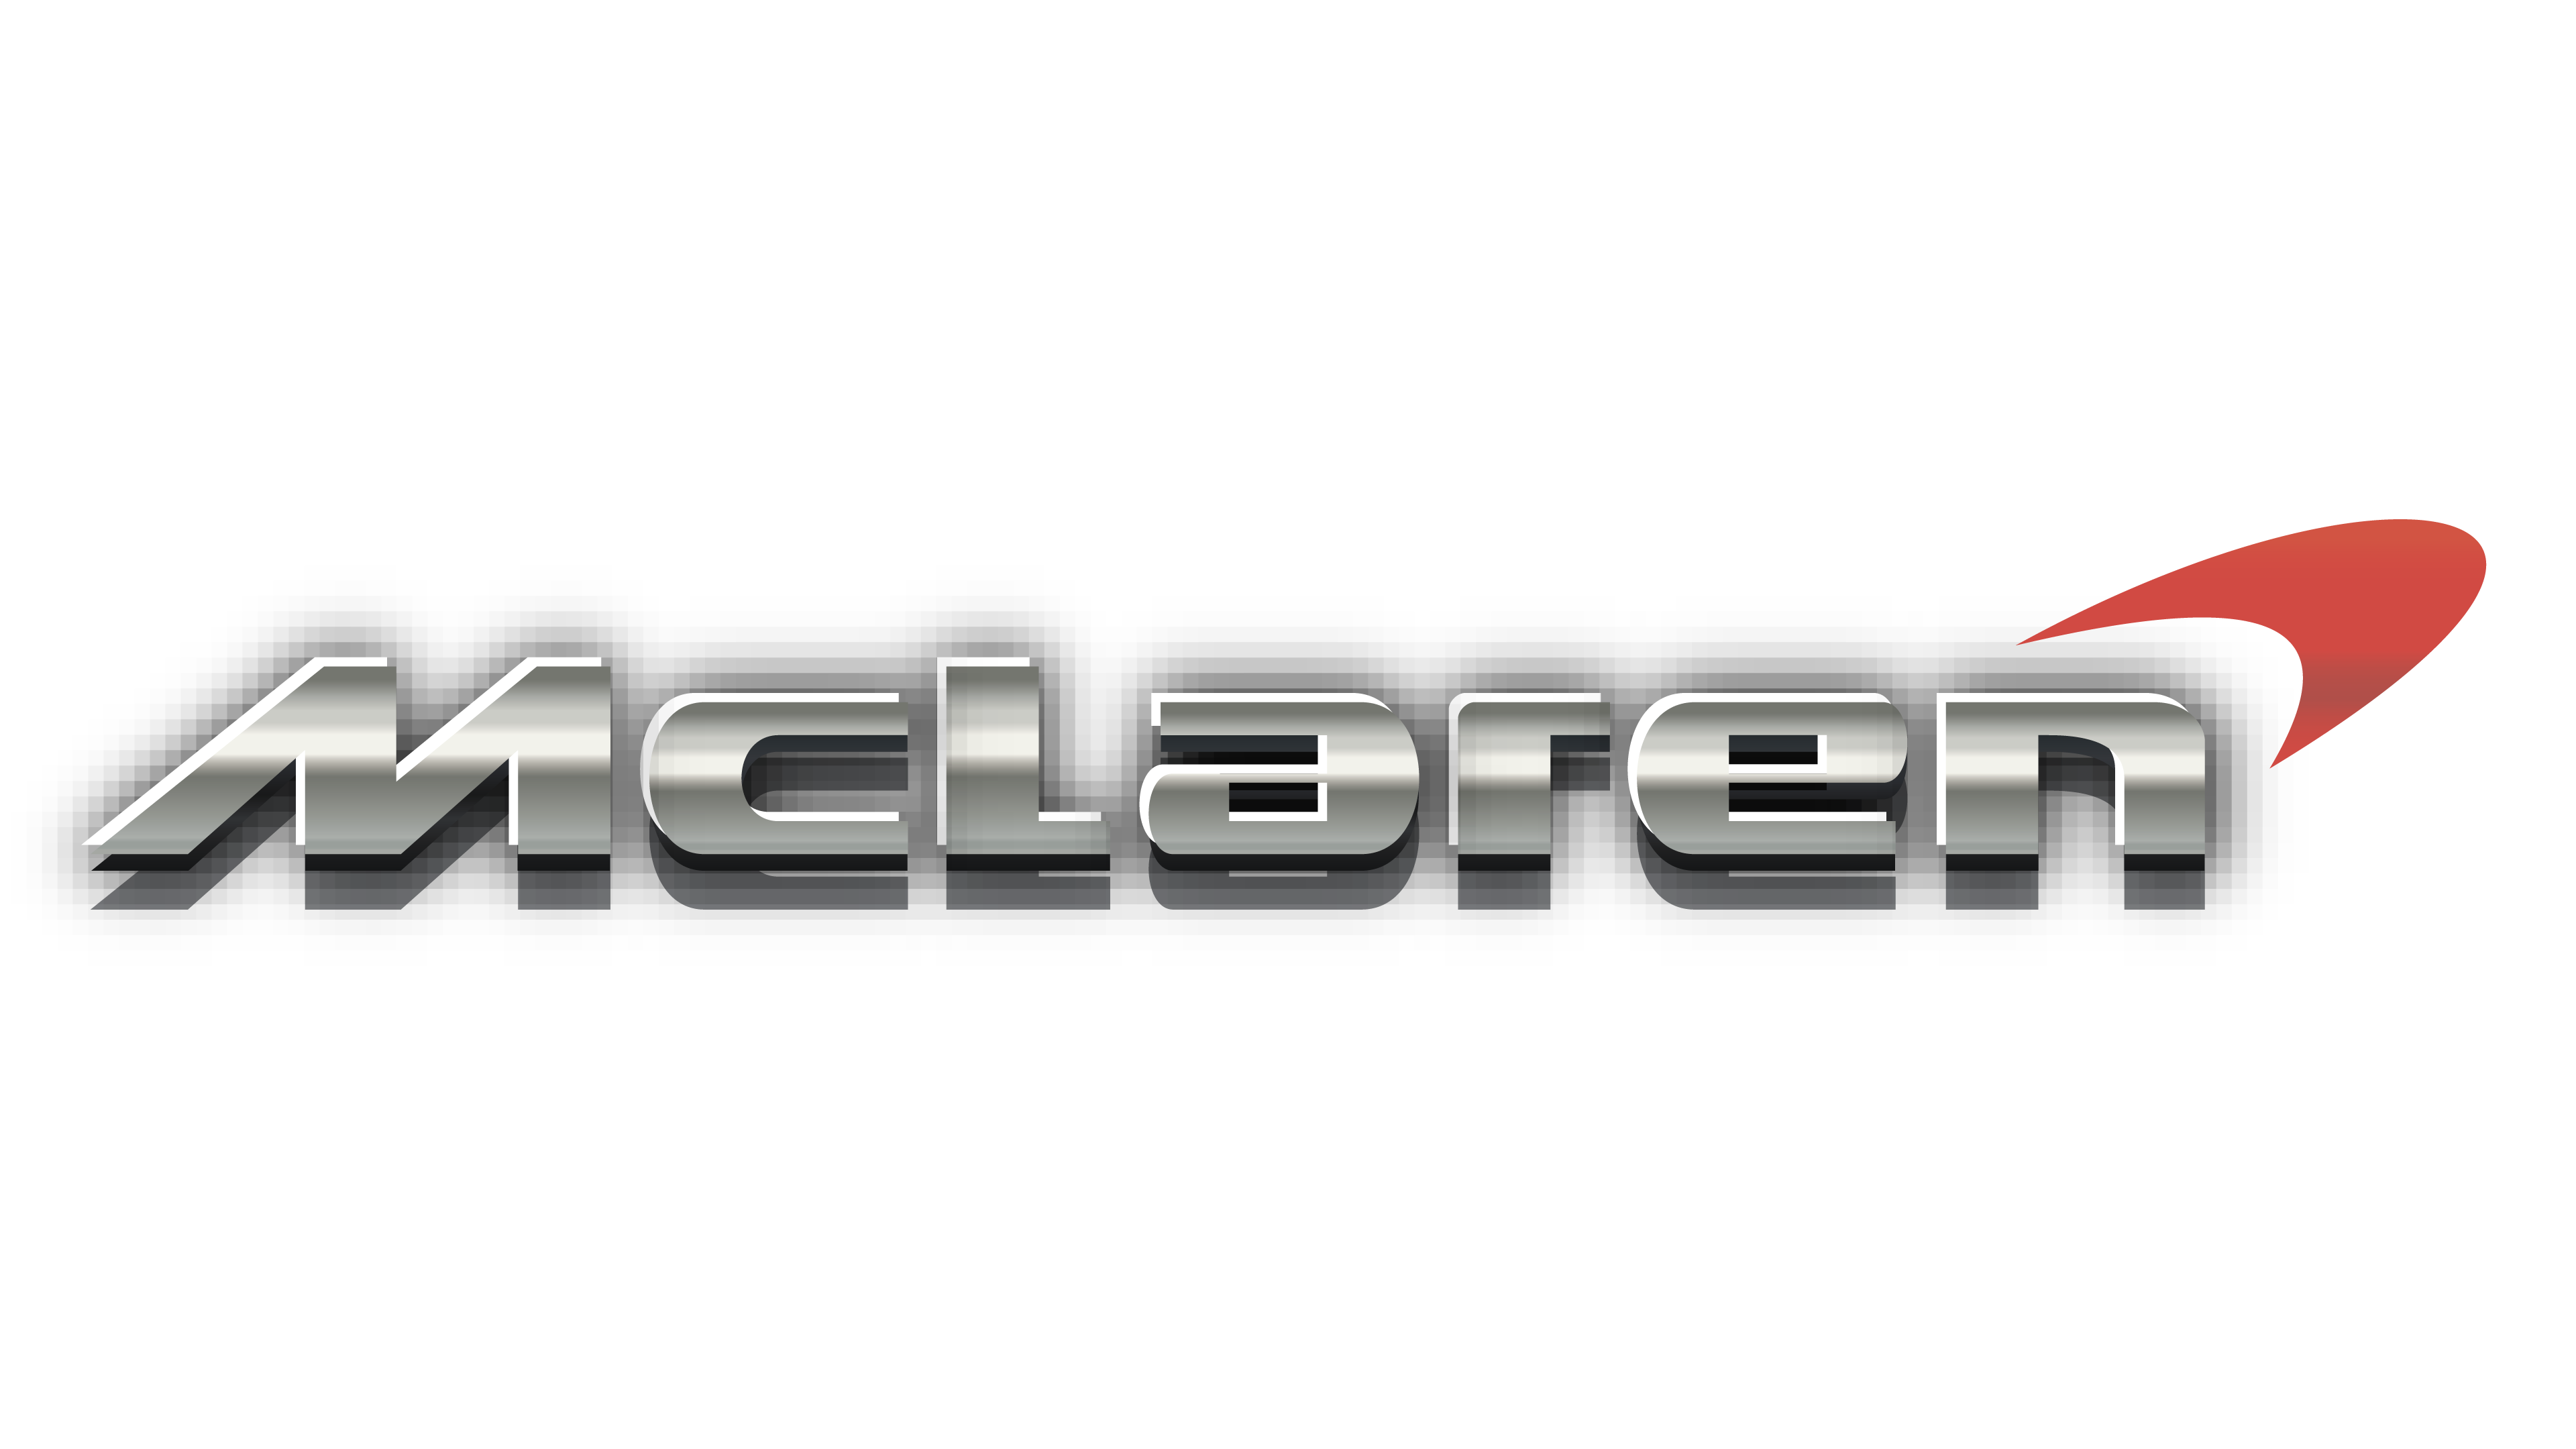 Download Mclaren Logo Free Pn